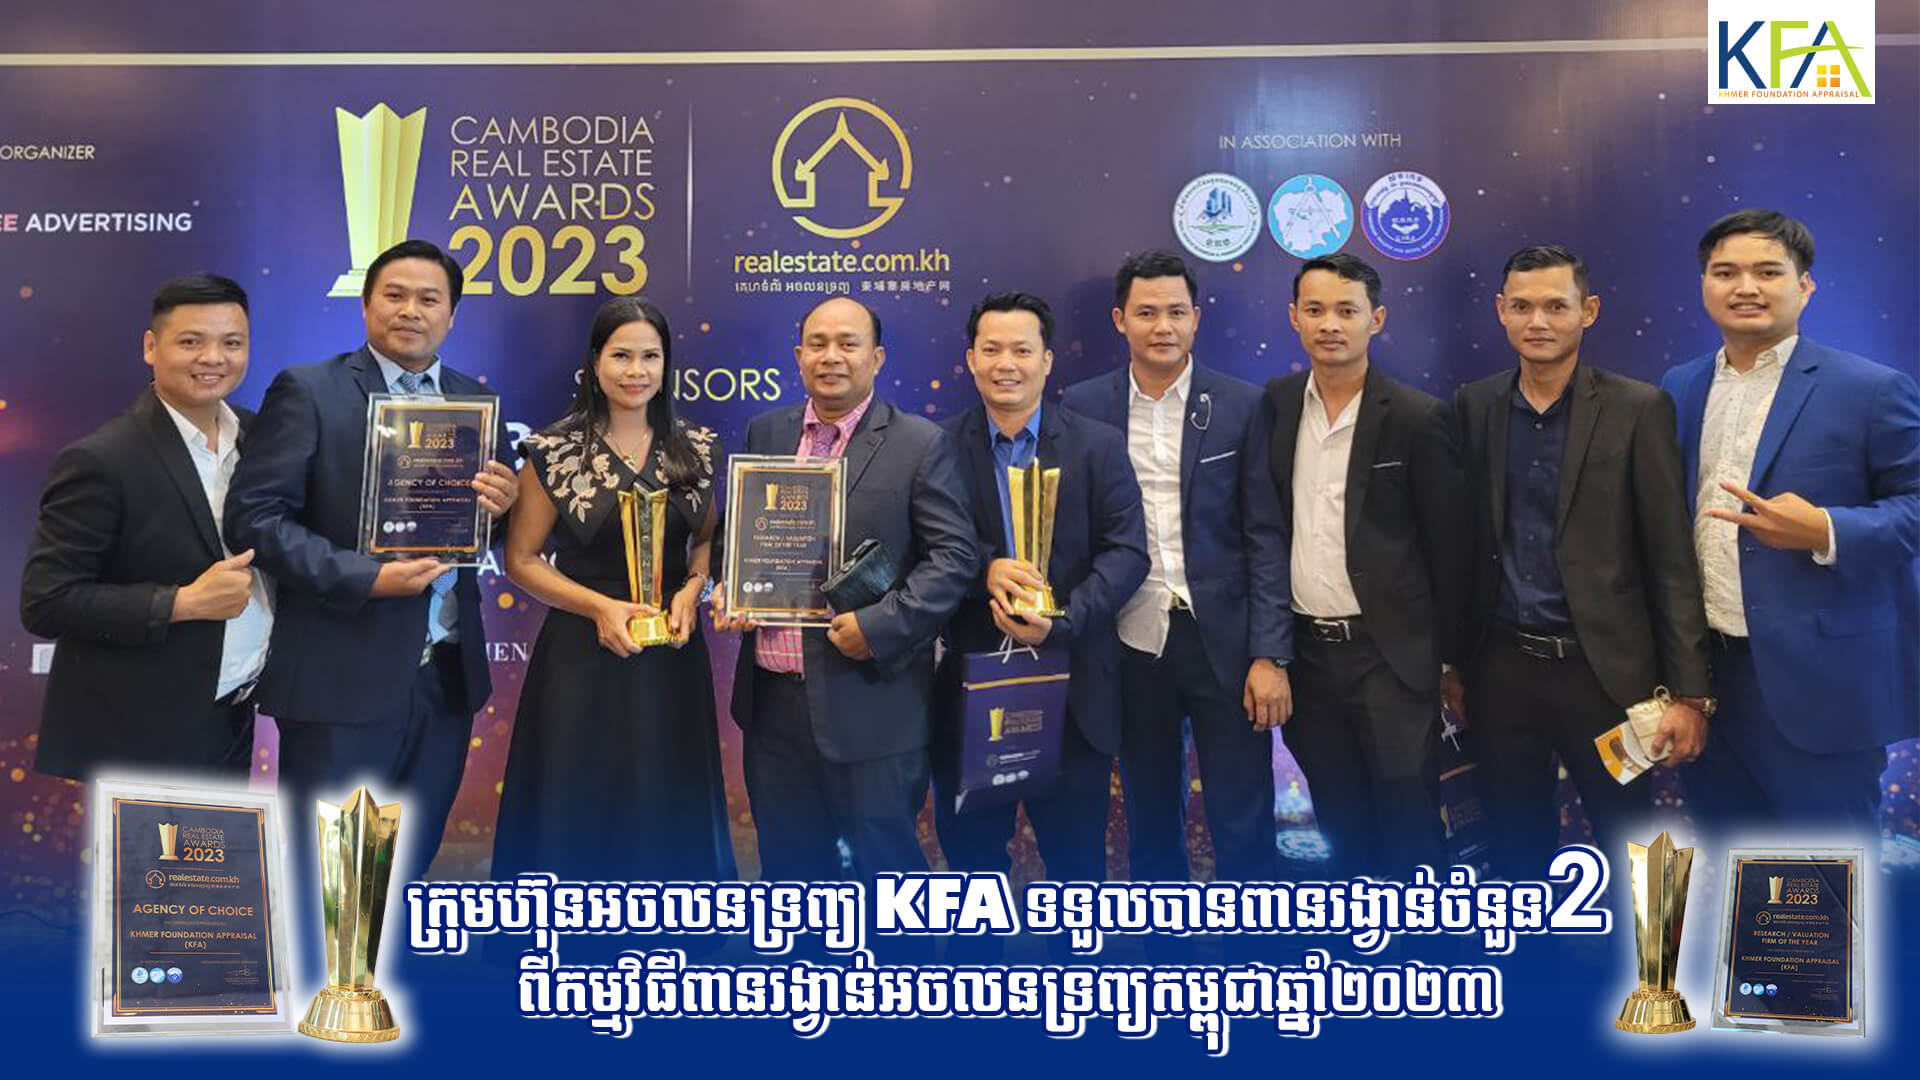 អស្ចារ្យណាស់ ! ក្រុមហ៊ុនអចលនទ្រព្យ KFA ទទួលបានពានរង្វាន់ចំនួន ២ ពីកម្មវិធី Cambodia Real Estate Awards ឆ្នាំ២០២៣